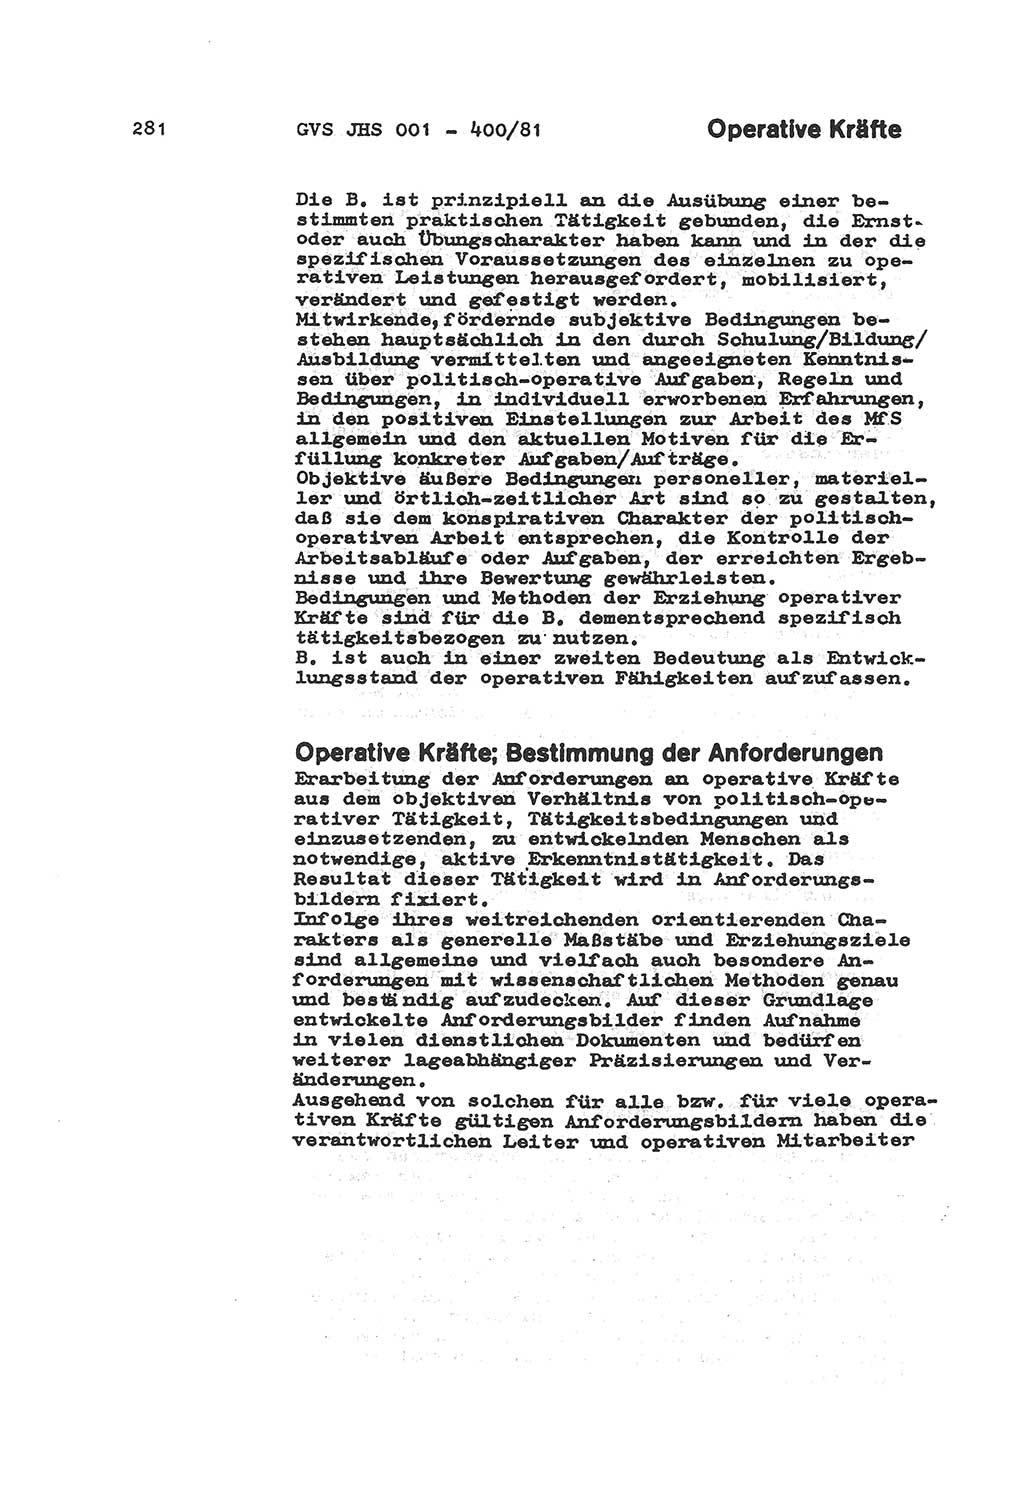 Wörterbuch der politisch-operativen Arbeit, Ministerium für Staatssicherheit (MfS) [Deutsche Demokratische Republik (DDR)], Juristische Hochschule (JHS), Geheime Verschlußsache (GVS) o001-400/81, Potsdam 1985, Blatt 281 (Wb. pol.-op. Arb. MfS DDR JHS GVS o001-400/81 1985, Bl. 281)